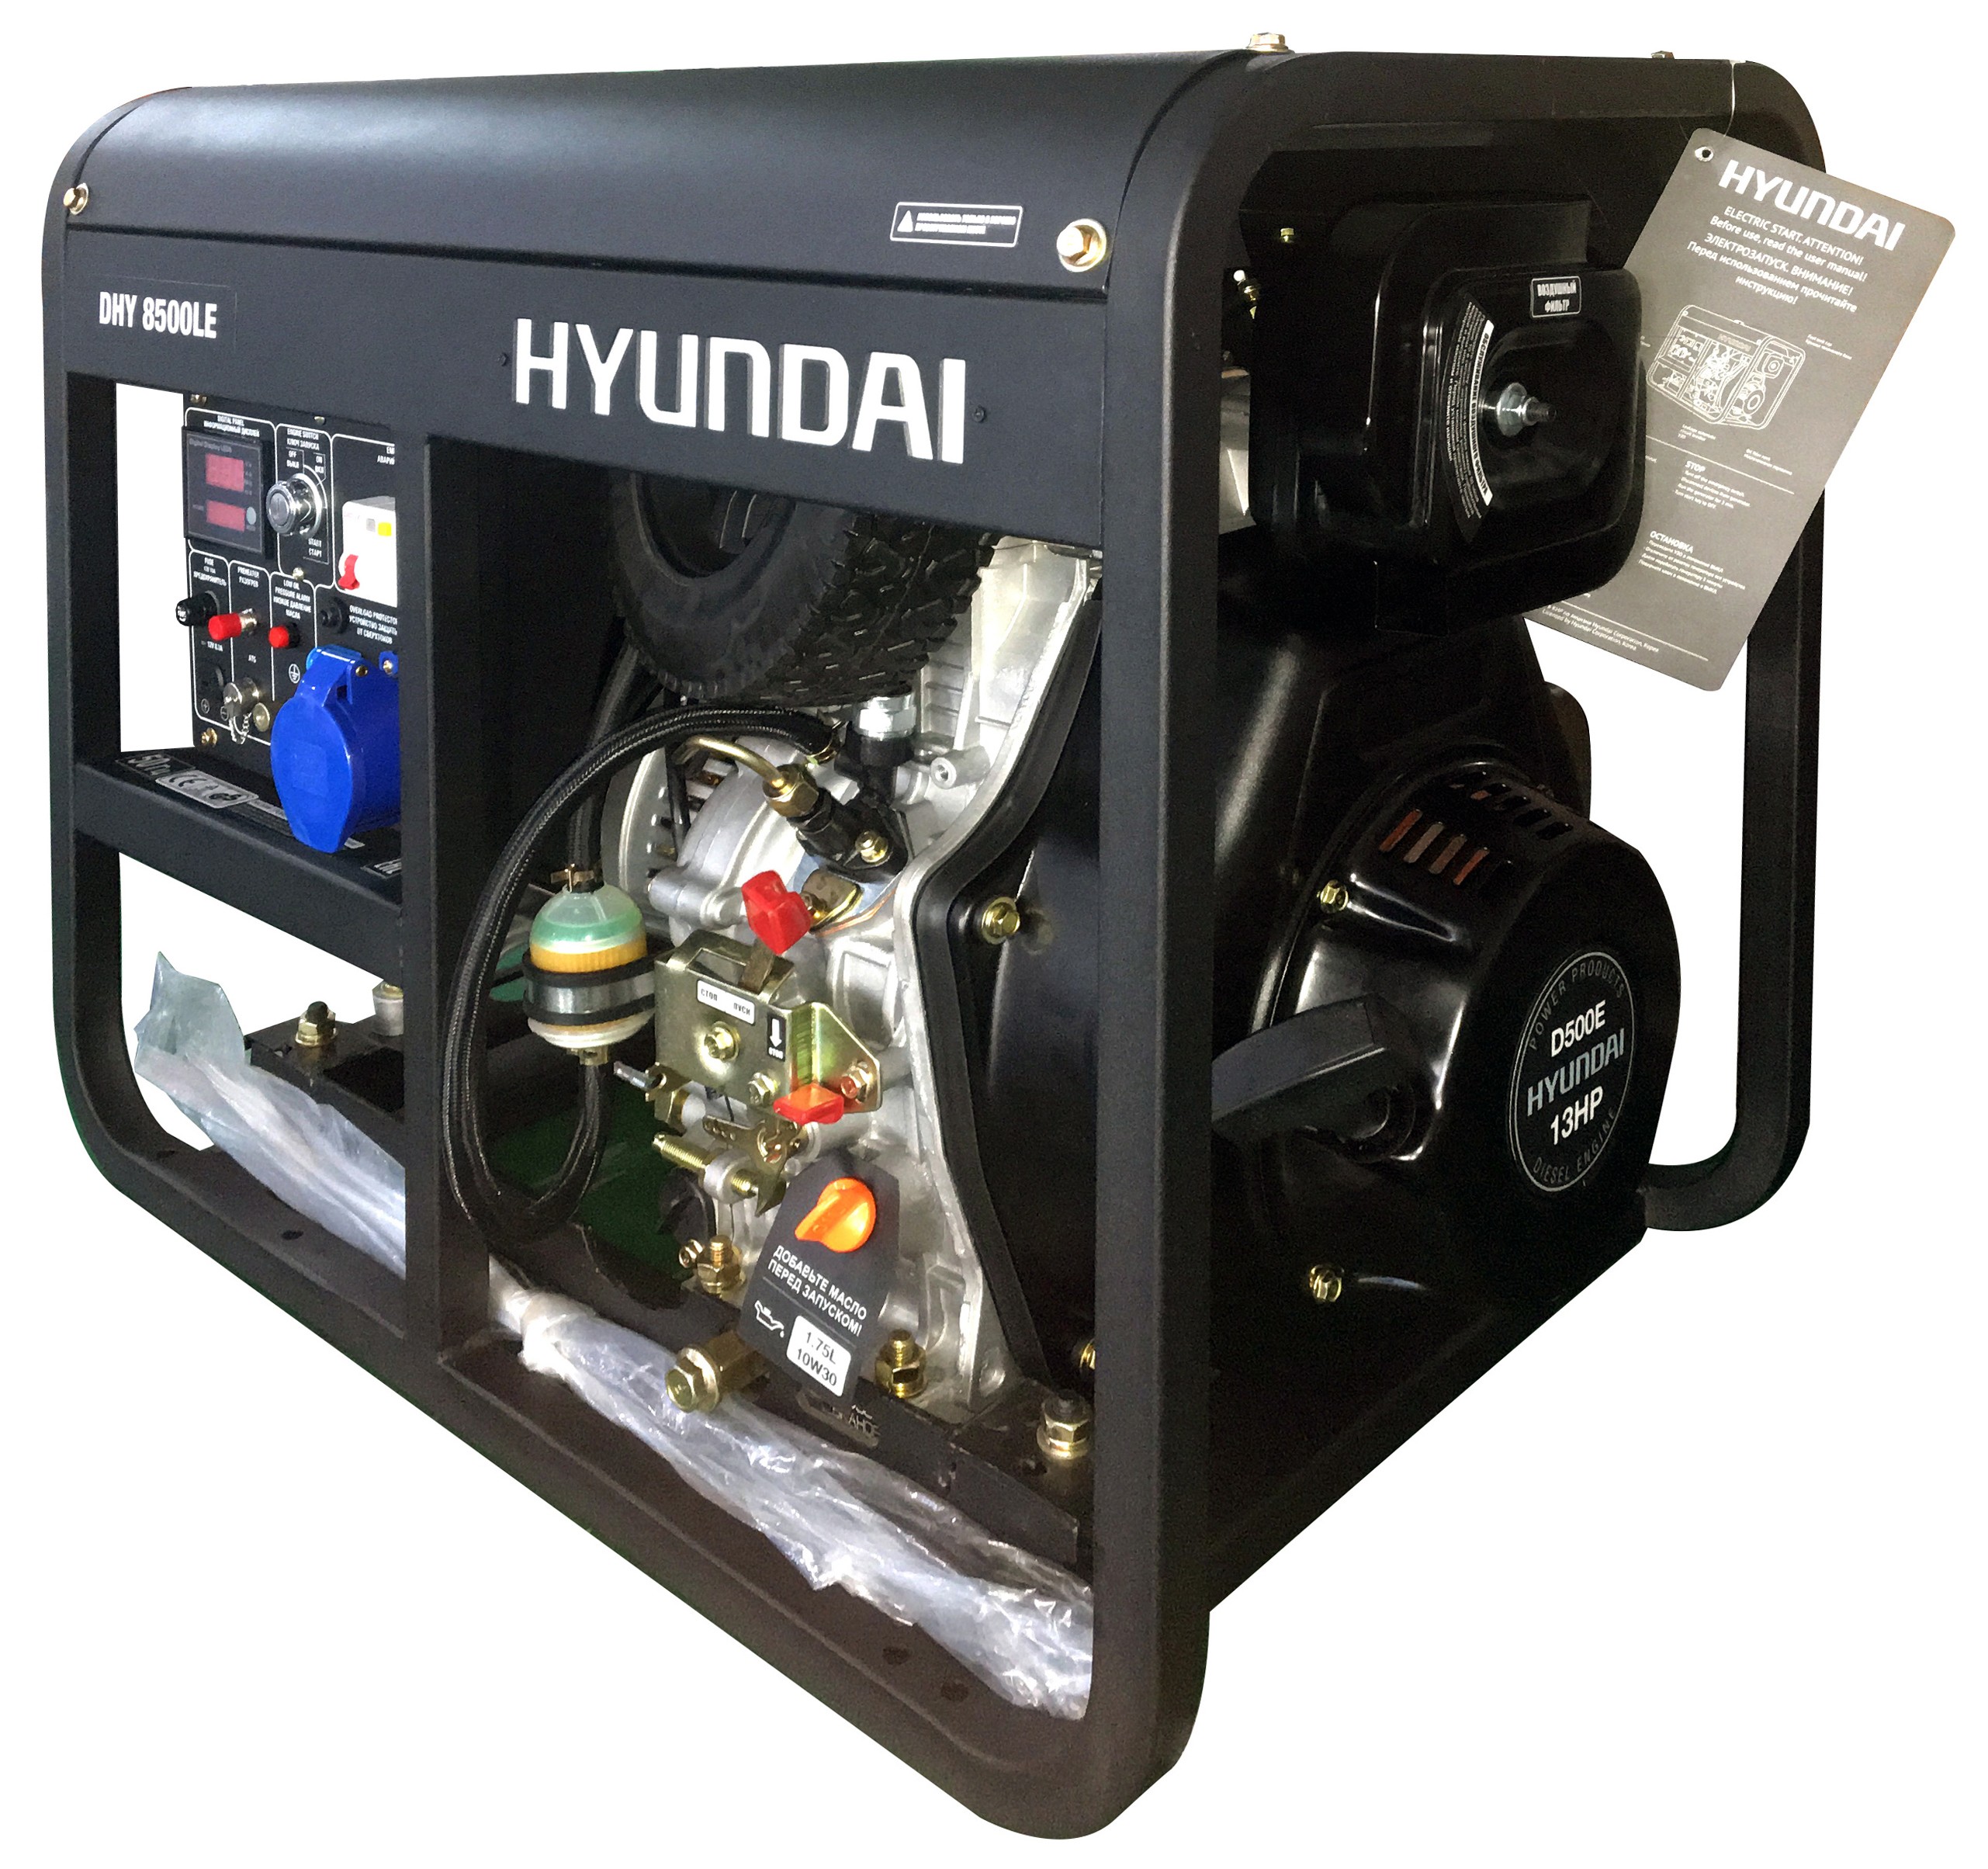 Дизельный генератор Hyundai DHY 8500LE дизельный котел de dietrich